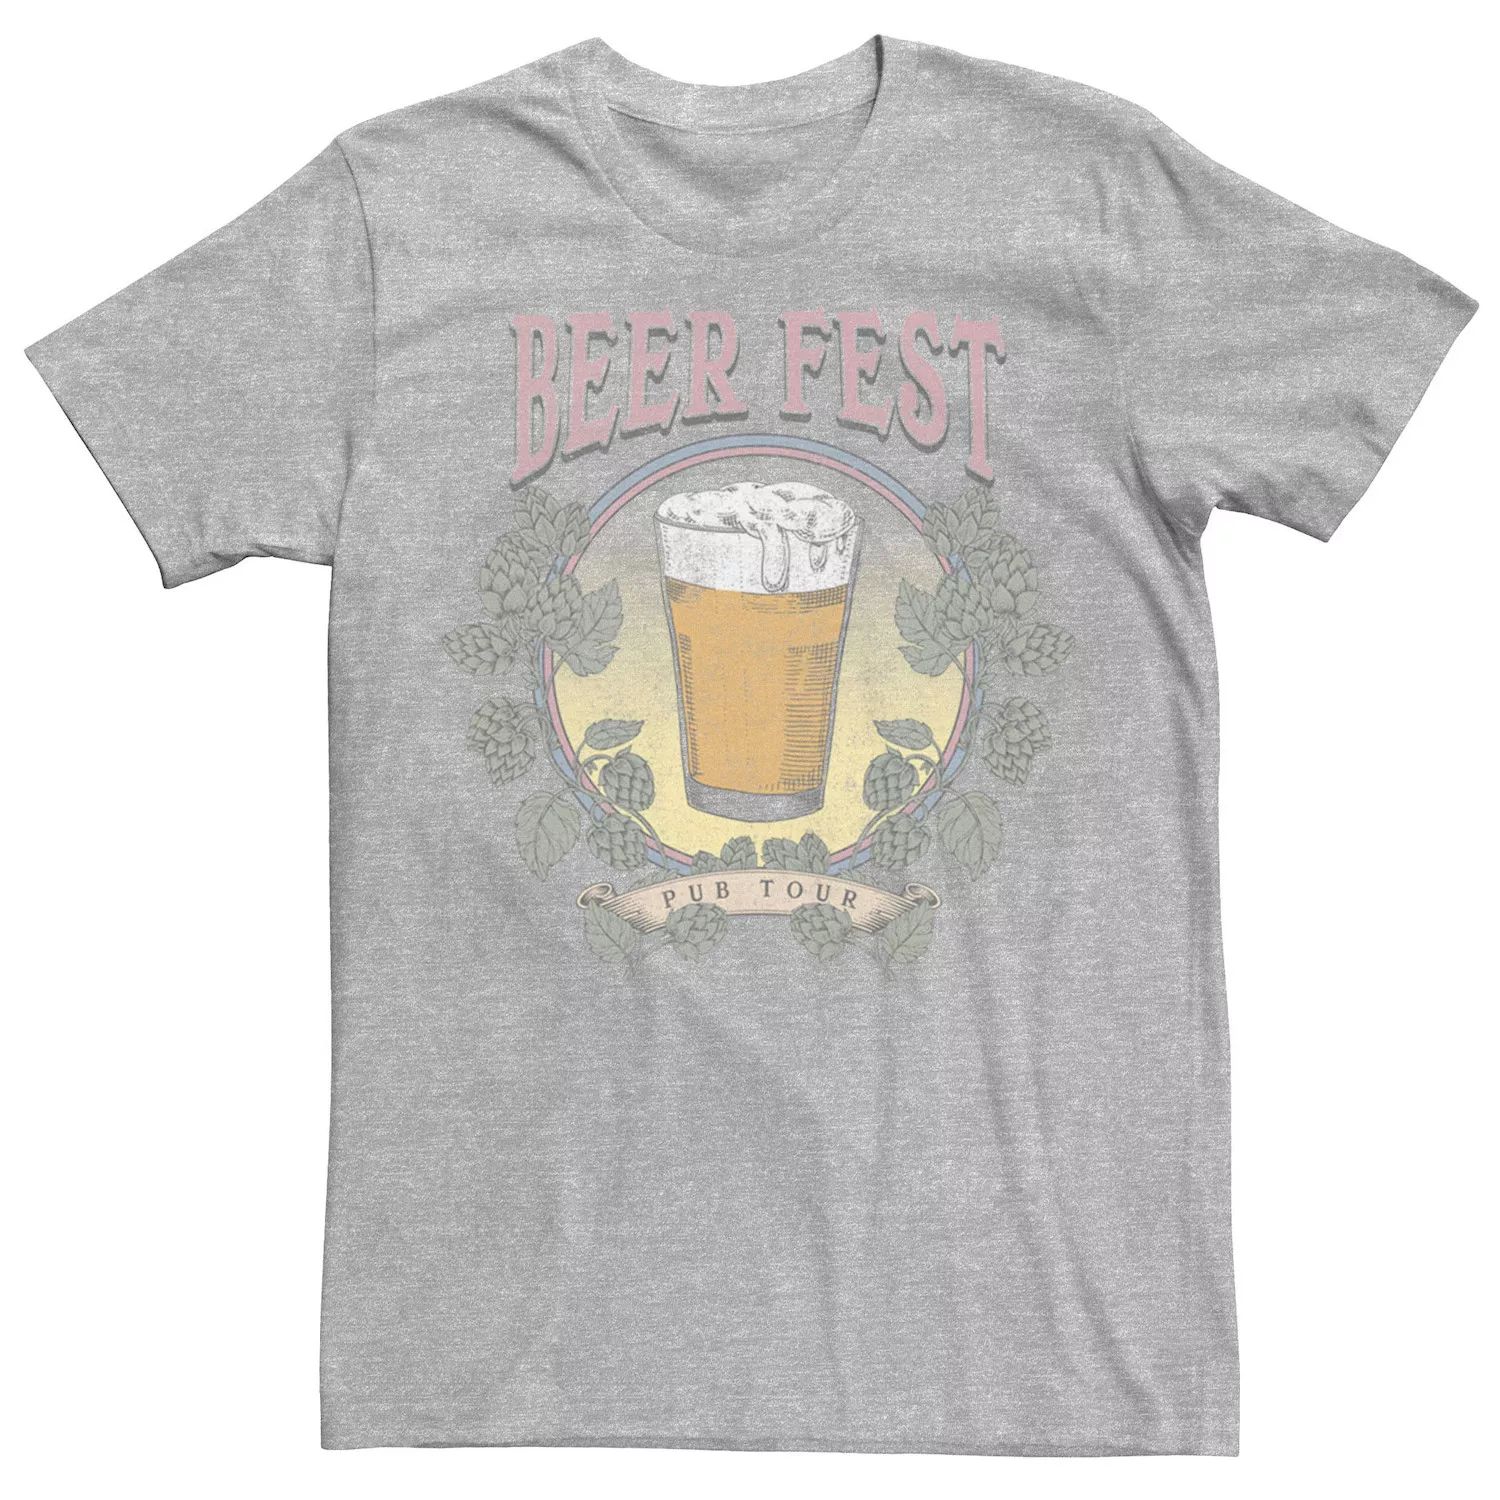 Мужская футболка Beer Fest Pub Tour Generic фотографии